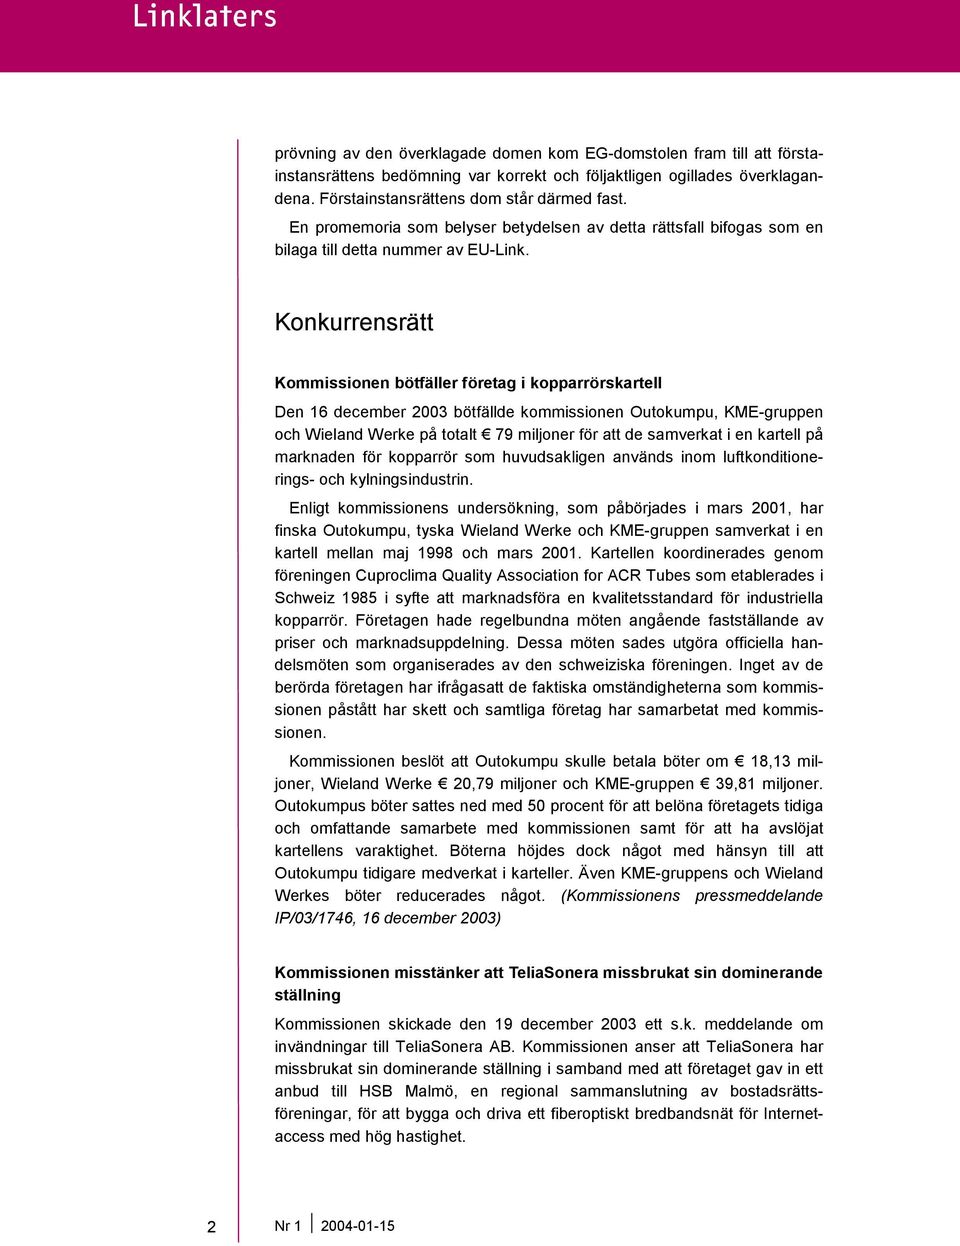 Konkurrensrätt Kommissionen bötfäller företag i kopparrörskartell Den 16 december 2003 bötfällde kommissionen Outokumpu, KME-gruppen och Wieland Werke på totalt 79 miljoner för att de samverkat i en